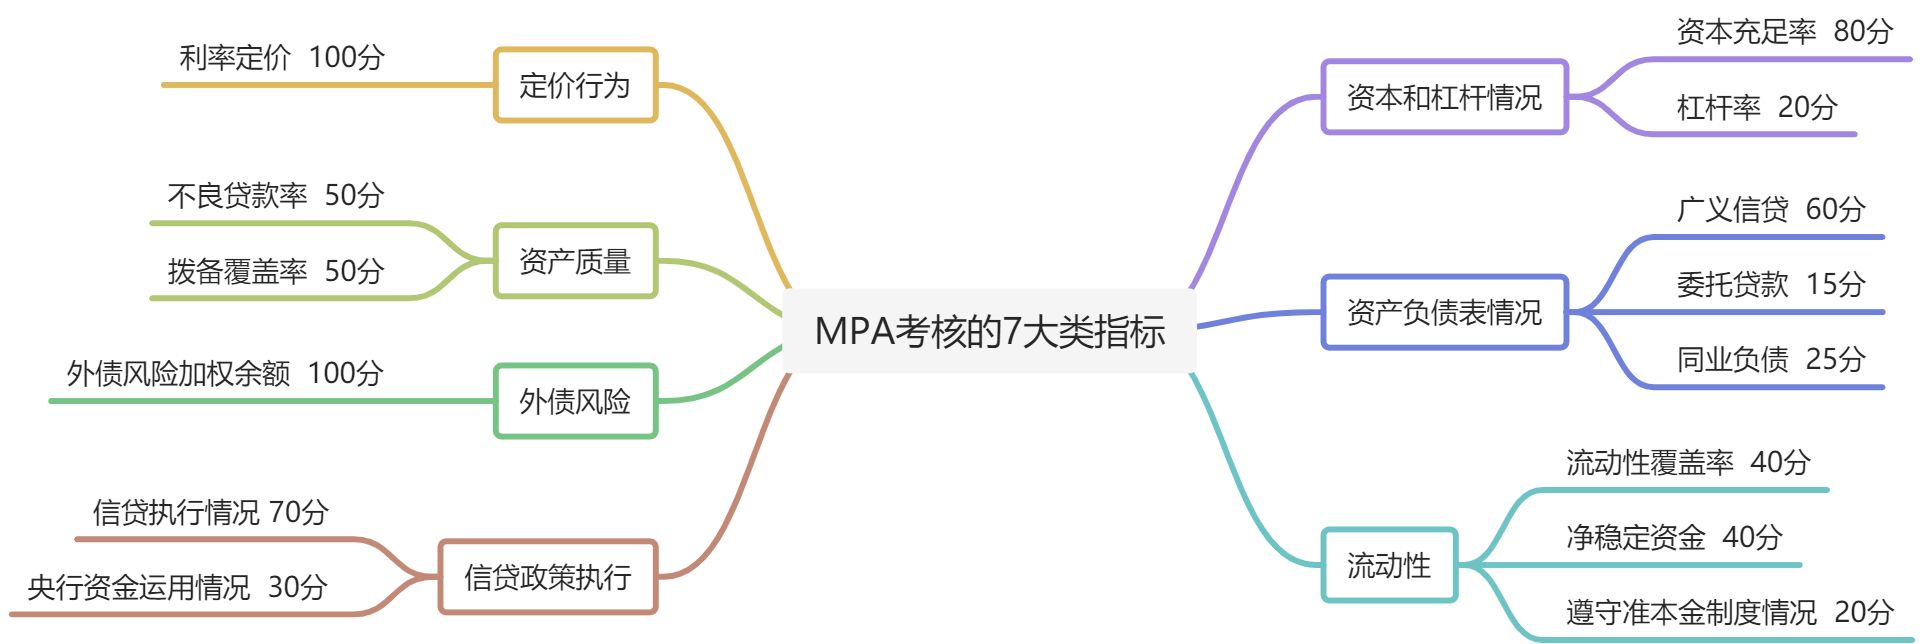 MPA考核与广义信贷规模之间的关系分析 - 图2